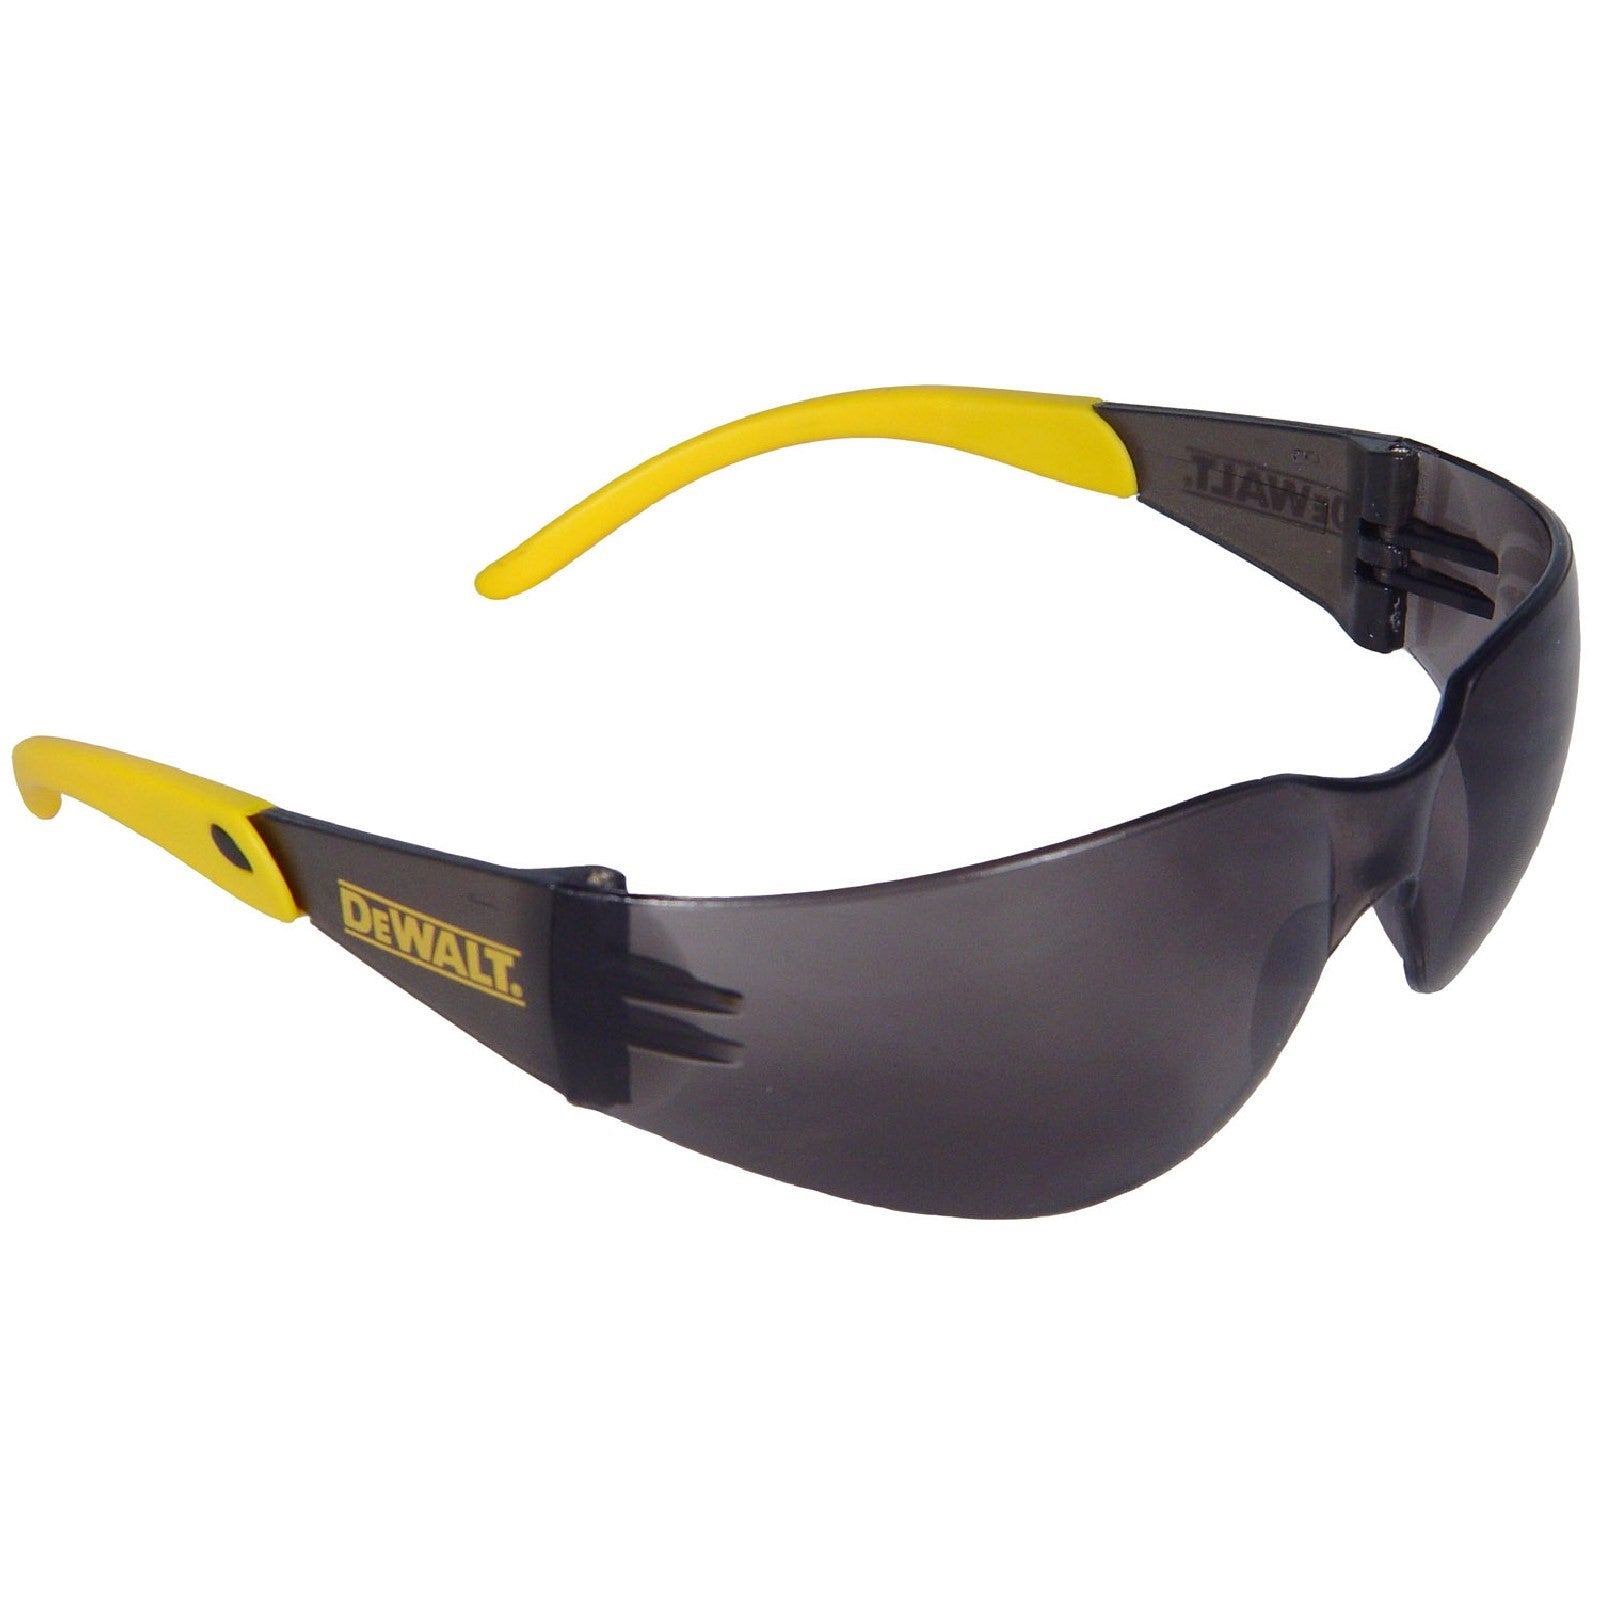 Dewalt Protector DPG54 Safety Eyewear